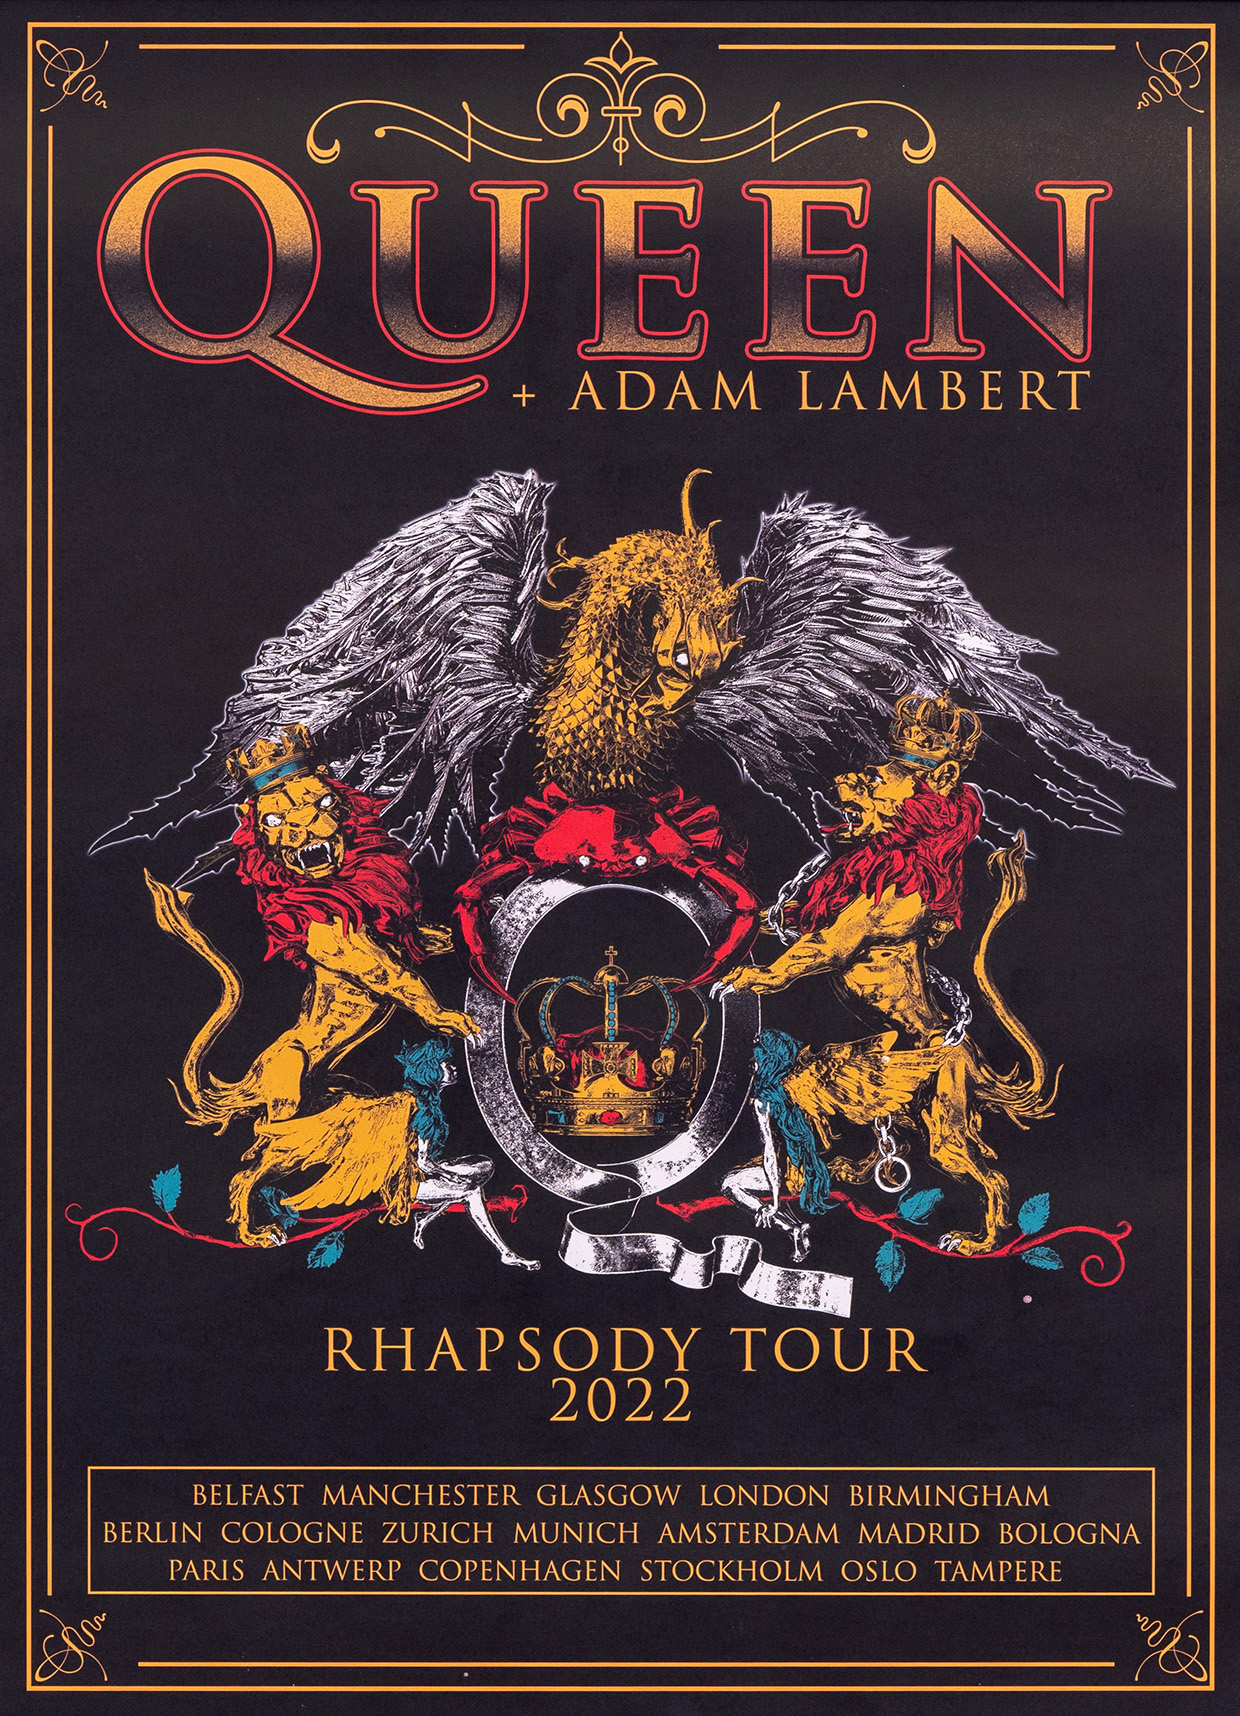 Queen + Adam Lambert on tour in 2022